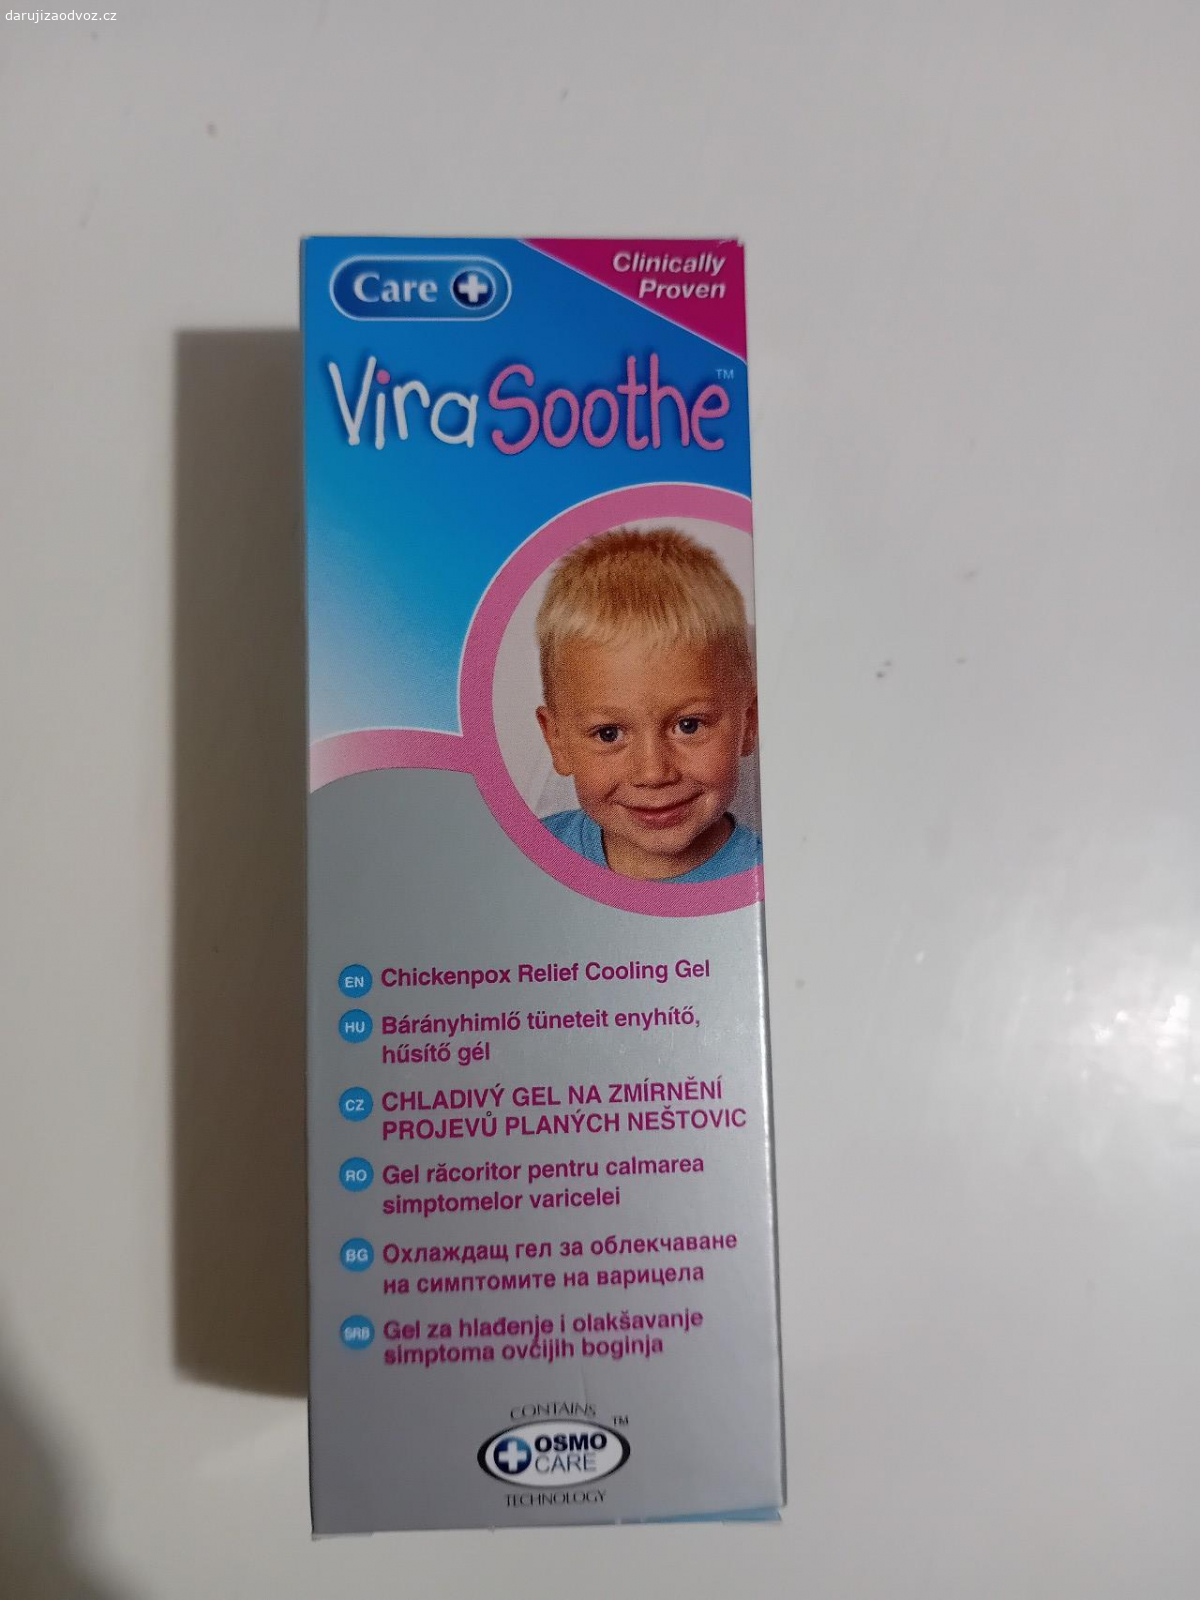 Virasoothe. gel na zmírnění projevů planých neštovic, otevřený před týdnem, ještě přes půl balení zbývá